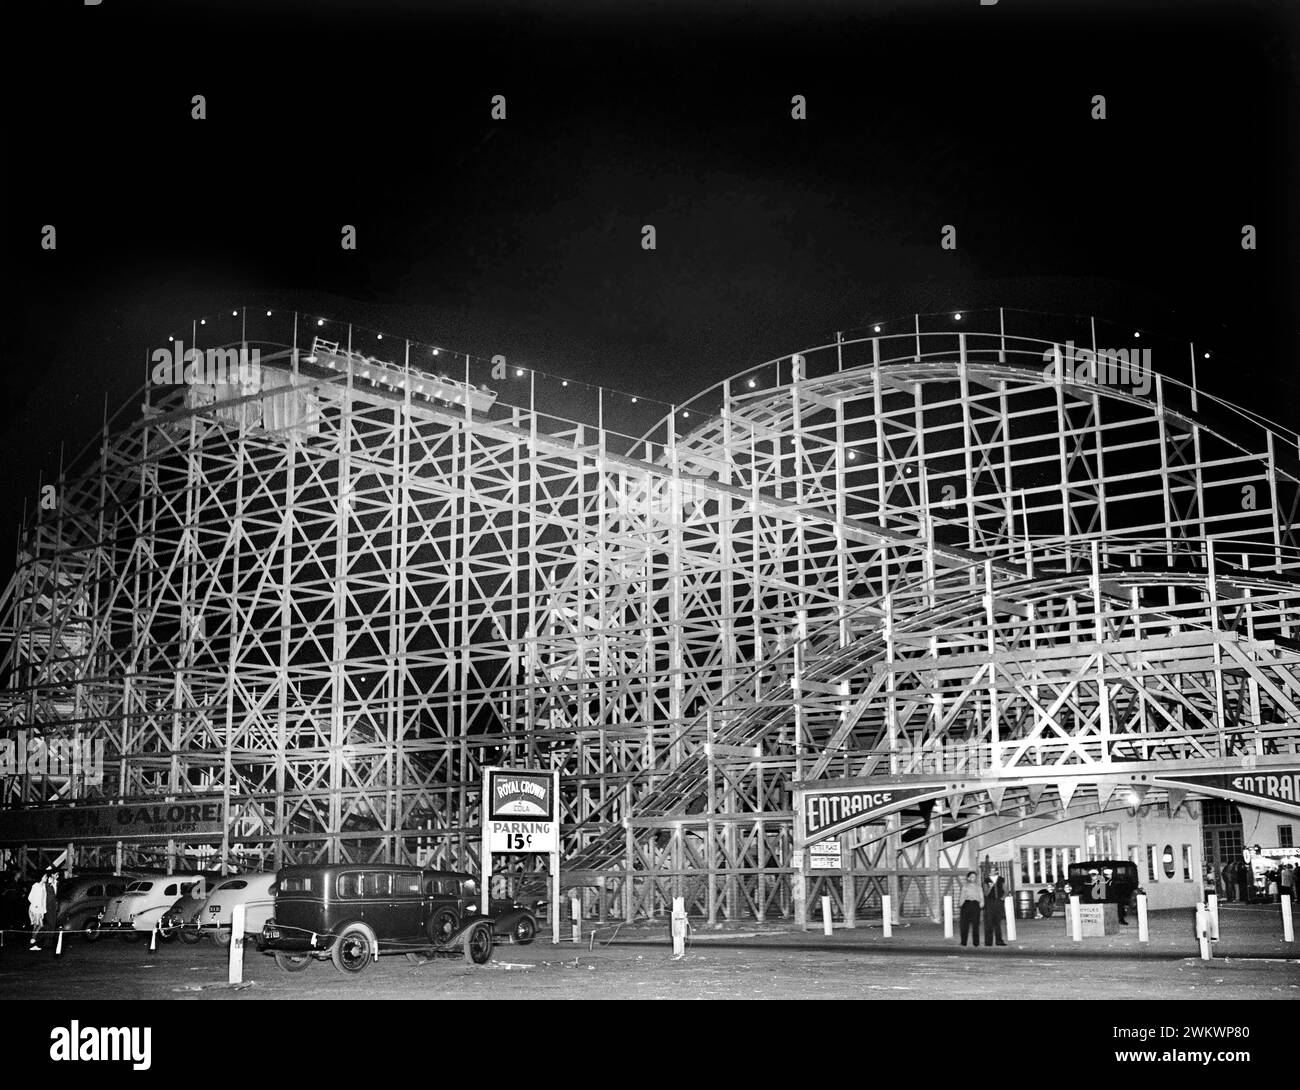 Montagnes russes du parc d'attractions la nuit, Mission Beach Amusement Center, San Diego, États-Unis, Russell Lee, U.S. Farm Security Administration, mai 1941 Banque D'Images